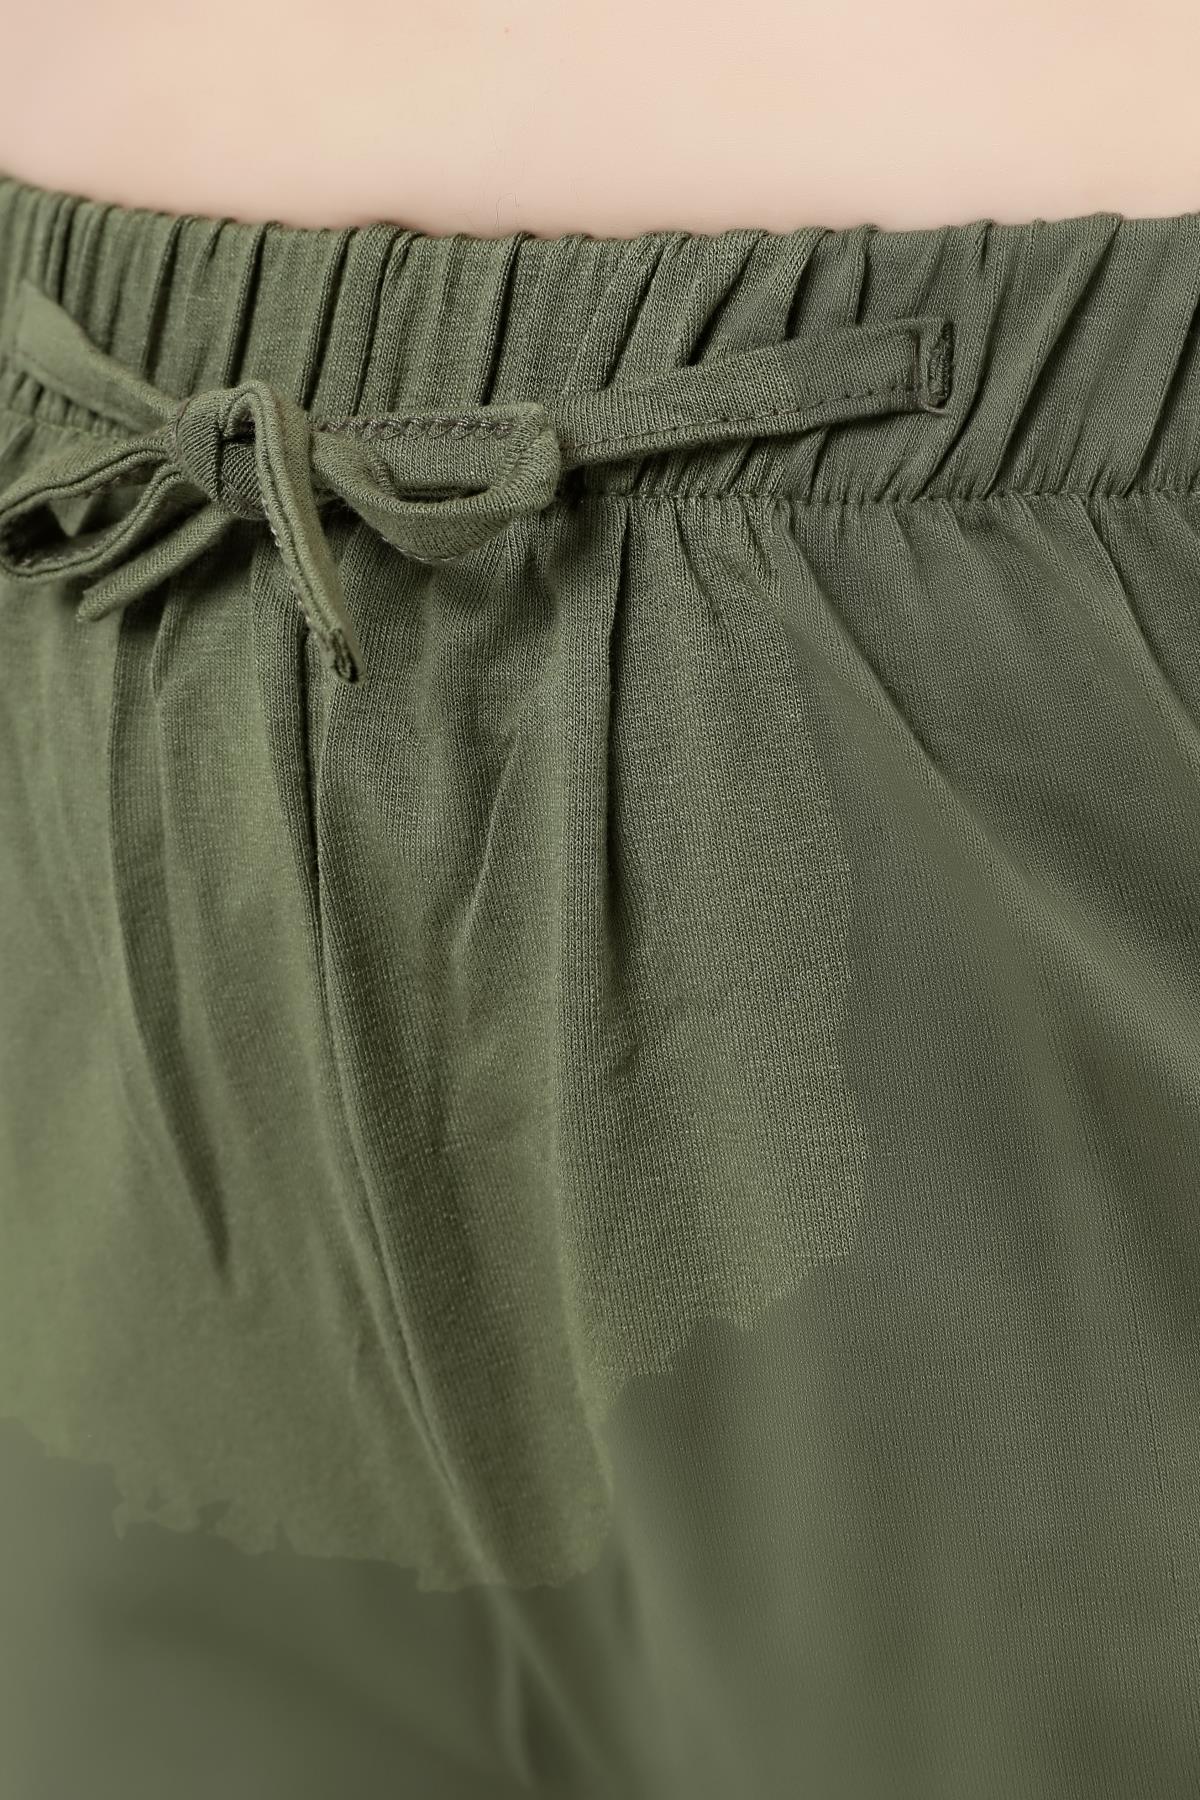 Kadın Büyük Beden Konfor Modeli Beli Lastikli Rahat Likralı Pamuklu Bol  Geniş Paça Pantolon